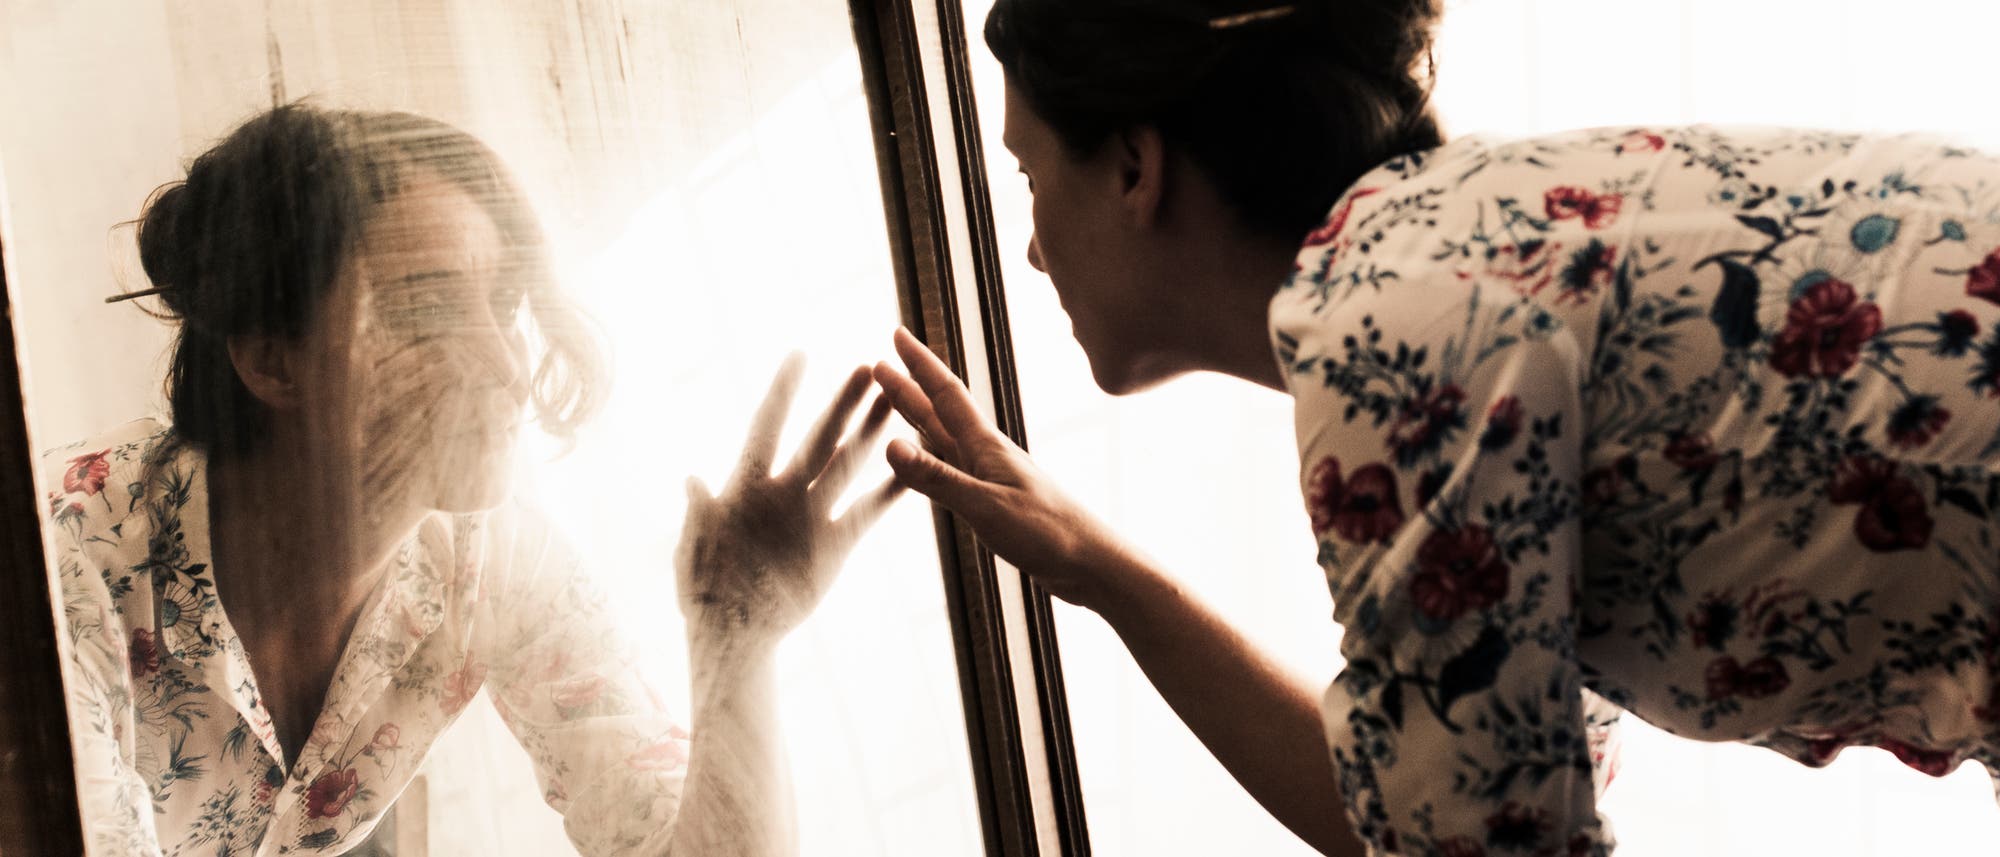 Eine Frau kniet vor einem Spiegel und streckt die Hand nach ihrem Spiegelbild aus.